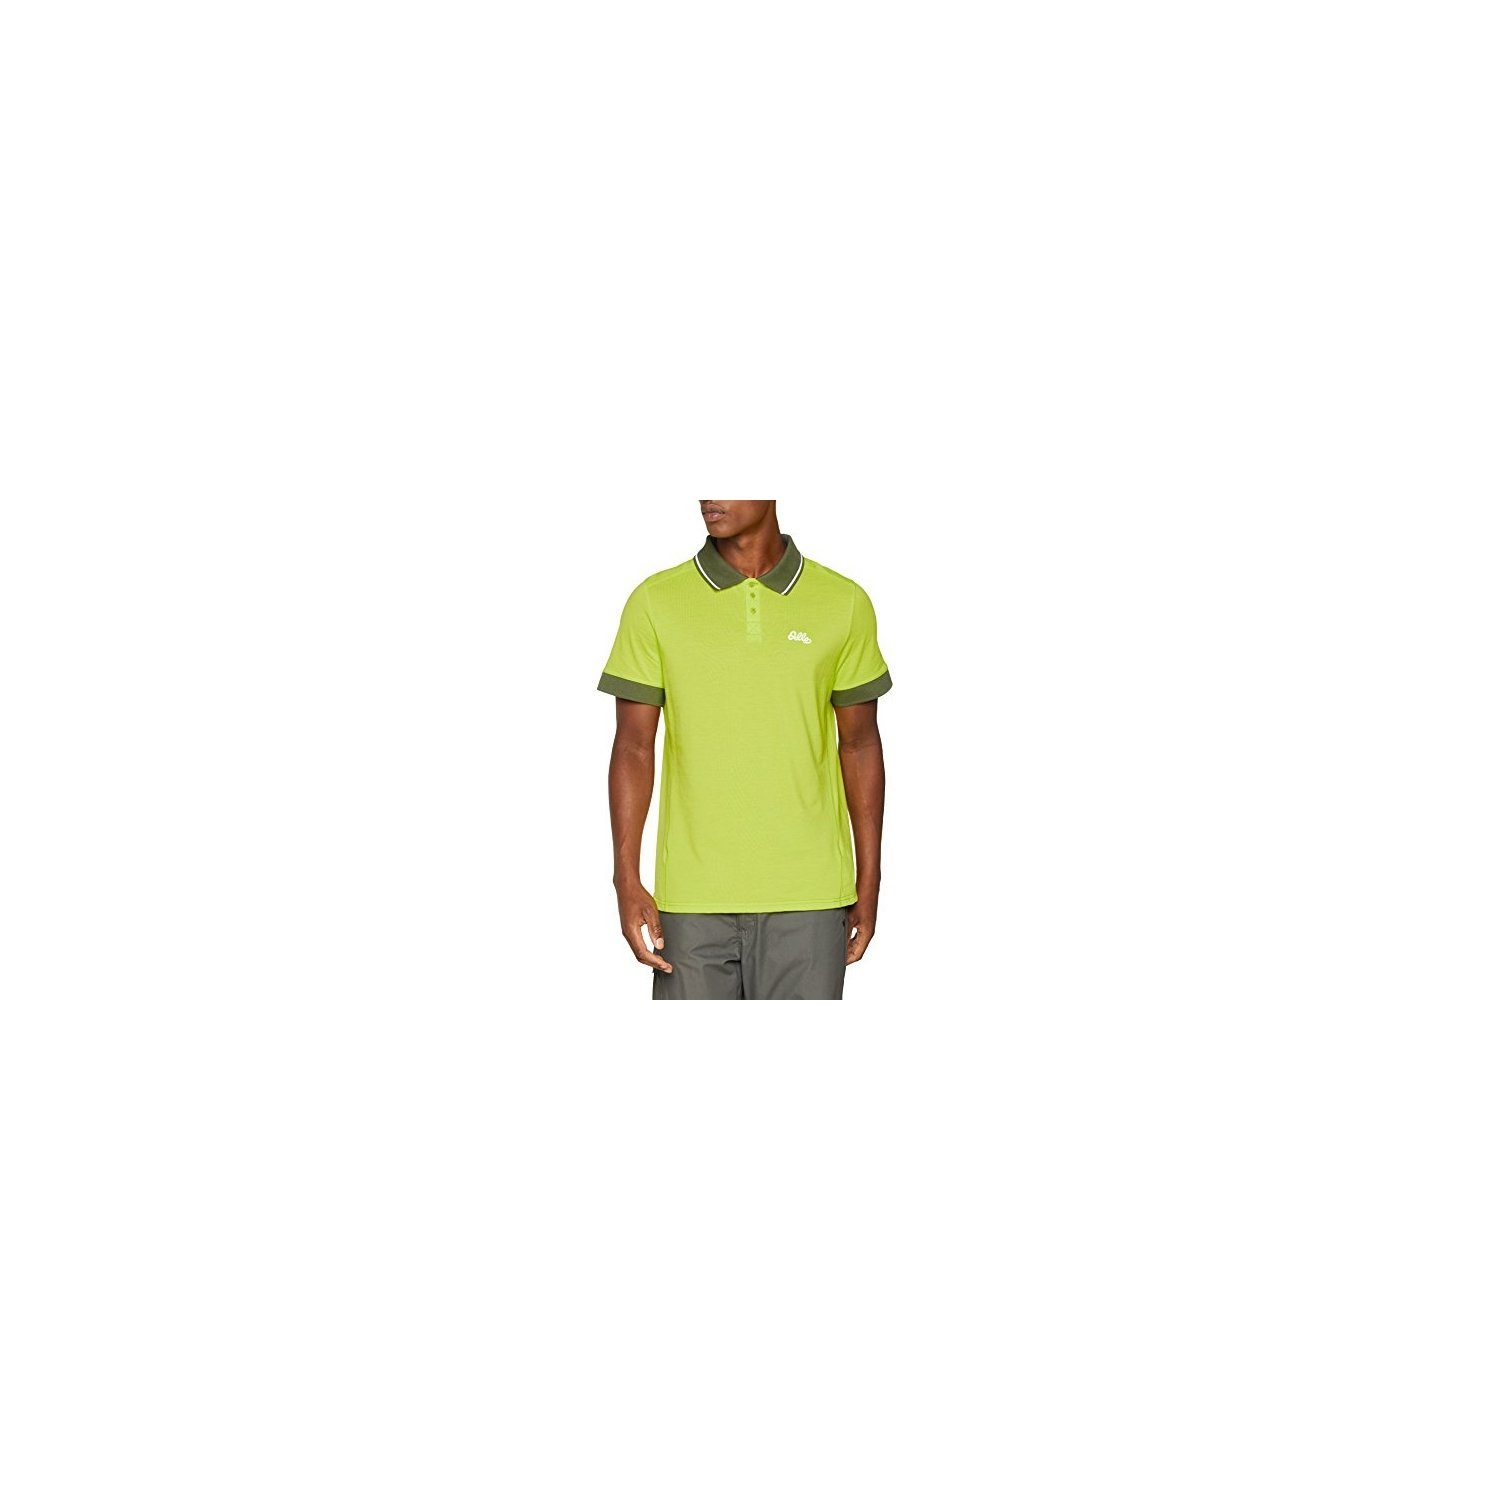 Odlo 40343 - / matte green NIKKO Herren M melange Poloshirt Poloshirt